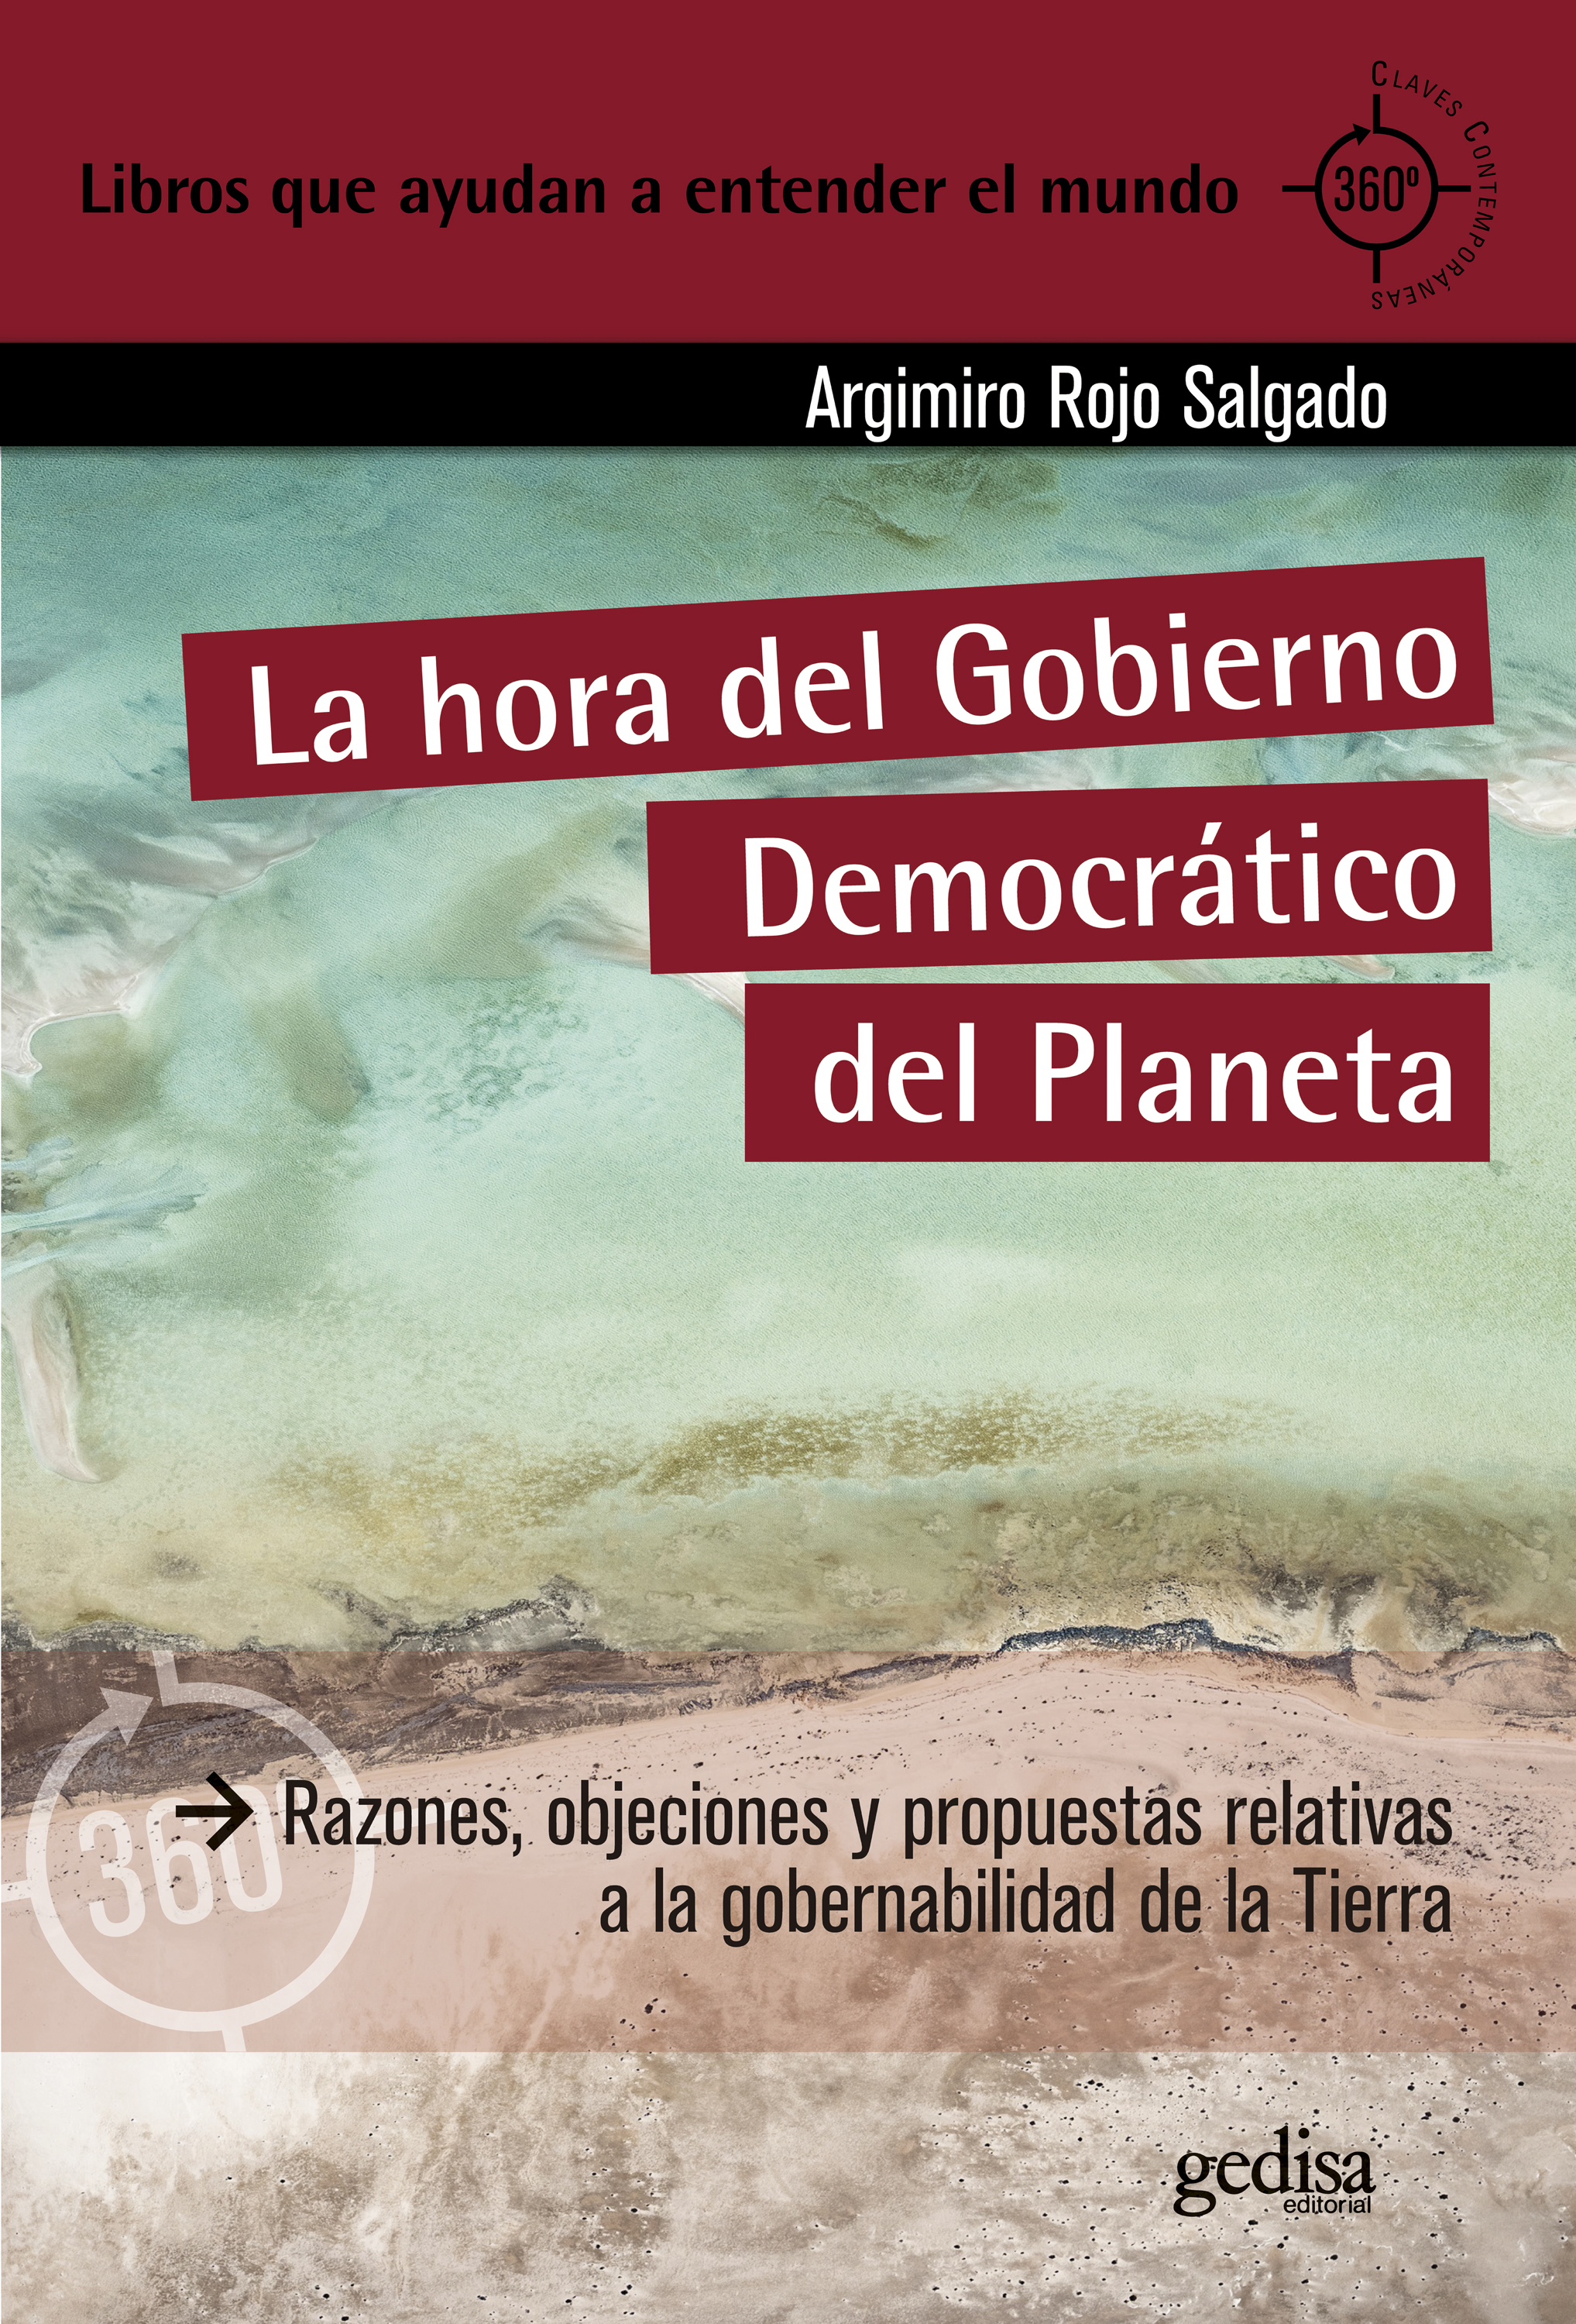 La hora del Gobierno Democrático del Planeta   «Razones, objeciones y propuestas relativas a la gobernabilidad de la Tierra»